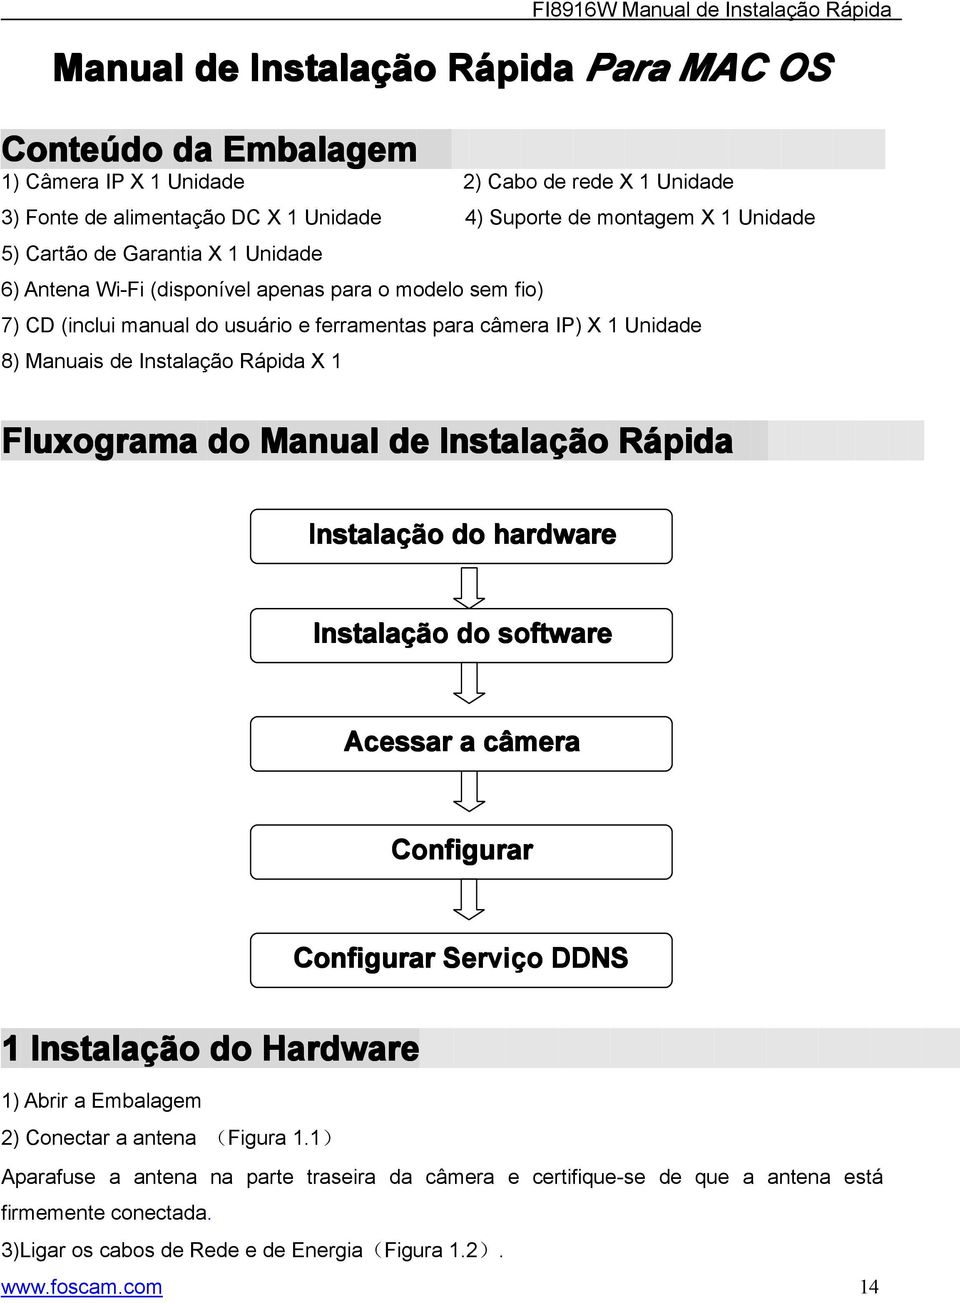 Fluxograma do Manual de Instalaçã ção Rápida Instalaçã ção do hardware Instalaçã ção do software Acessar a câmera Configurar Configurar Serviço DDNS 1 Instalaçã ção do Hardware 1) Abrir a Embalagem